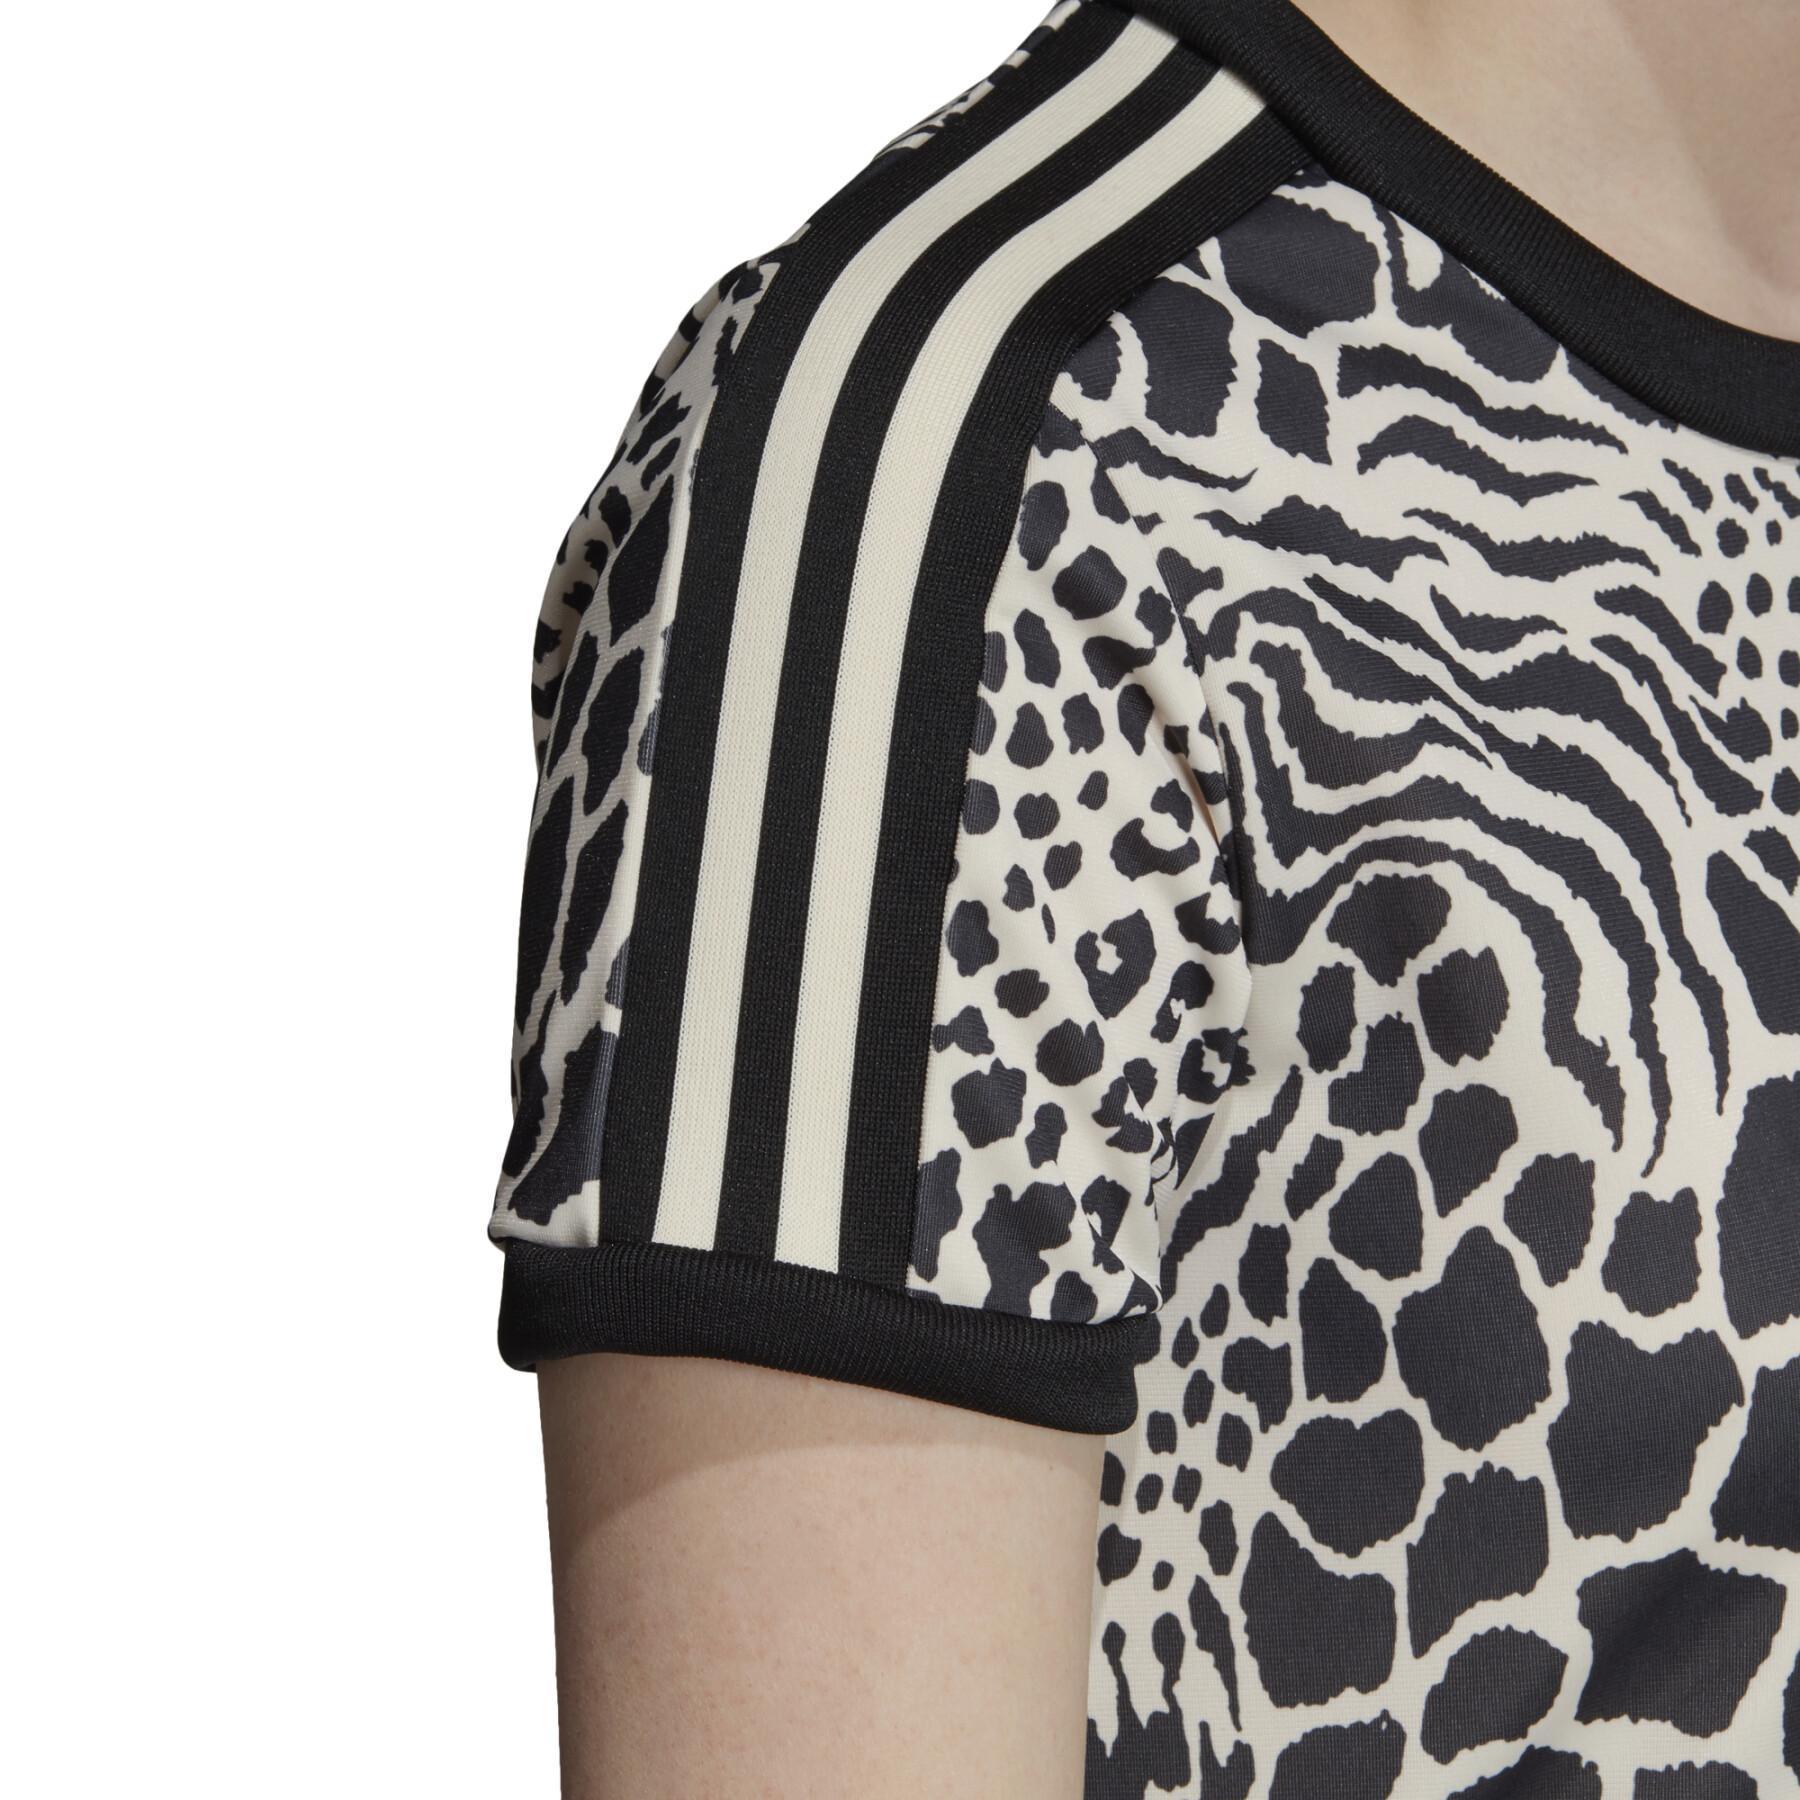 Crop T-Shirt Damen adidas Leopard